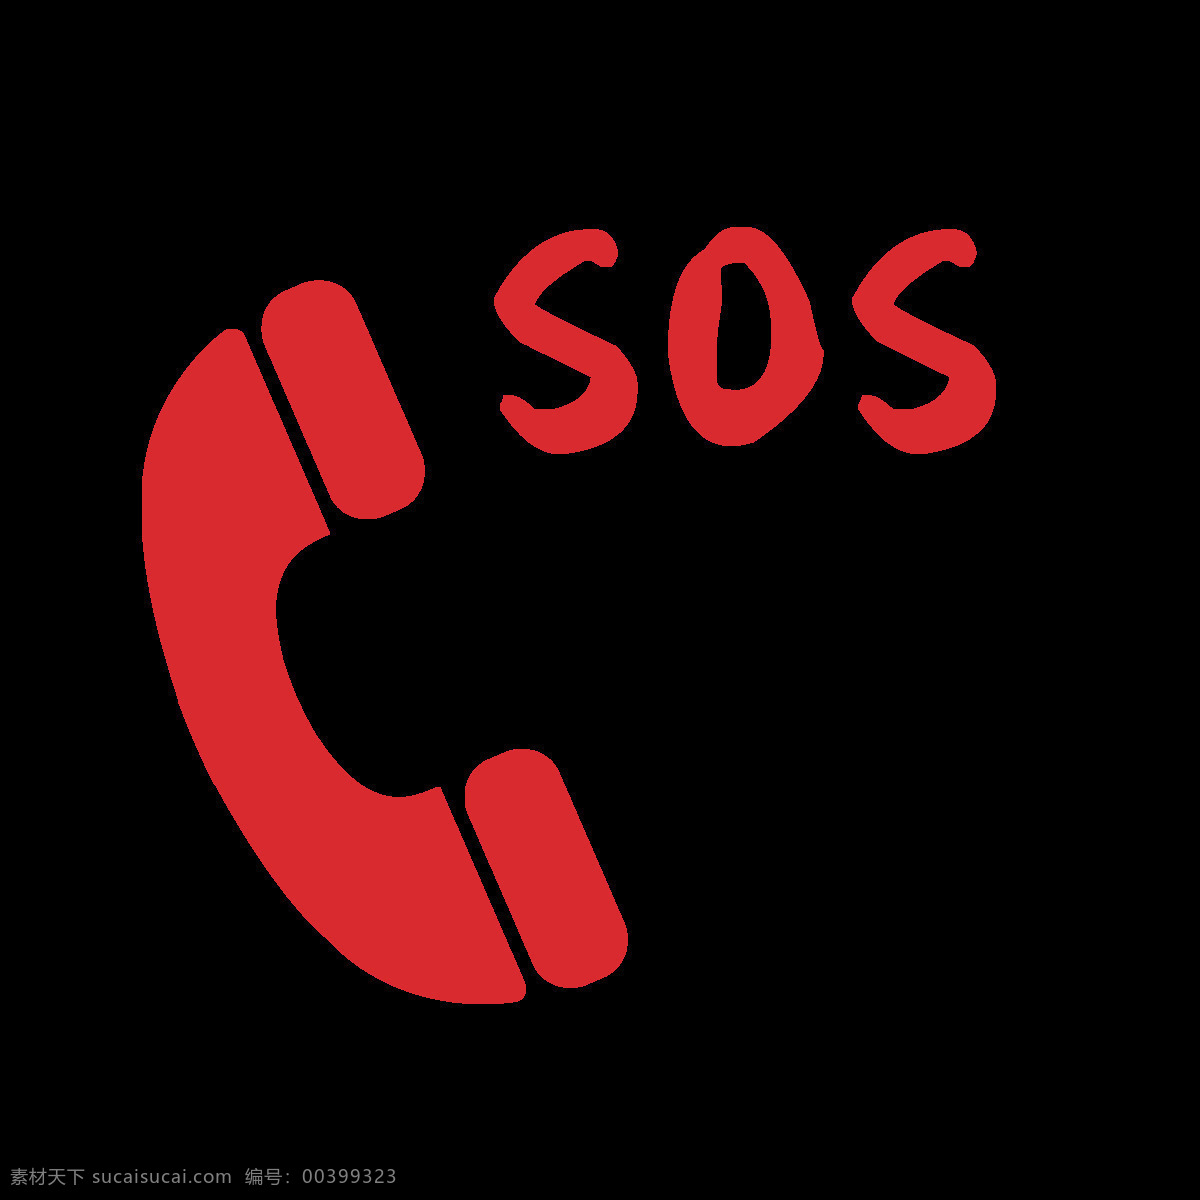 公共电话标志 矢量电话标志 sos电话 电话小标志 名片电话标志 分层